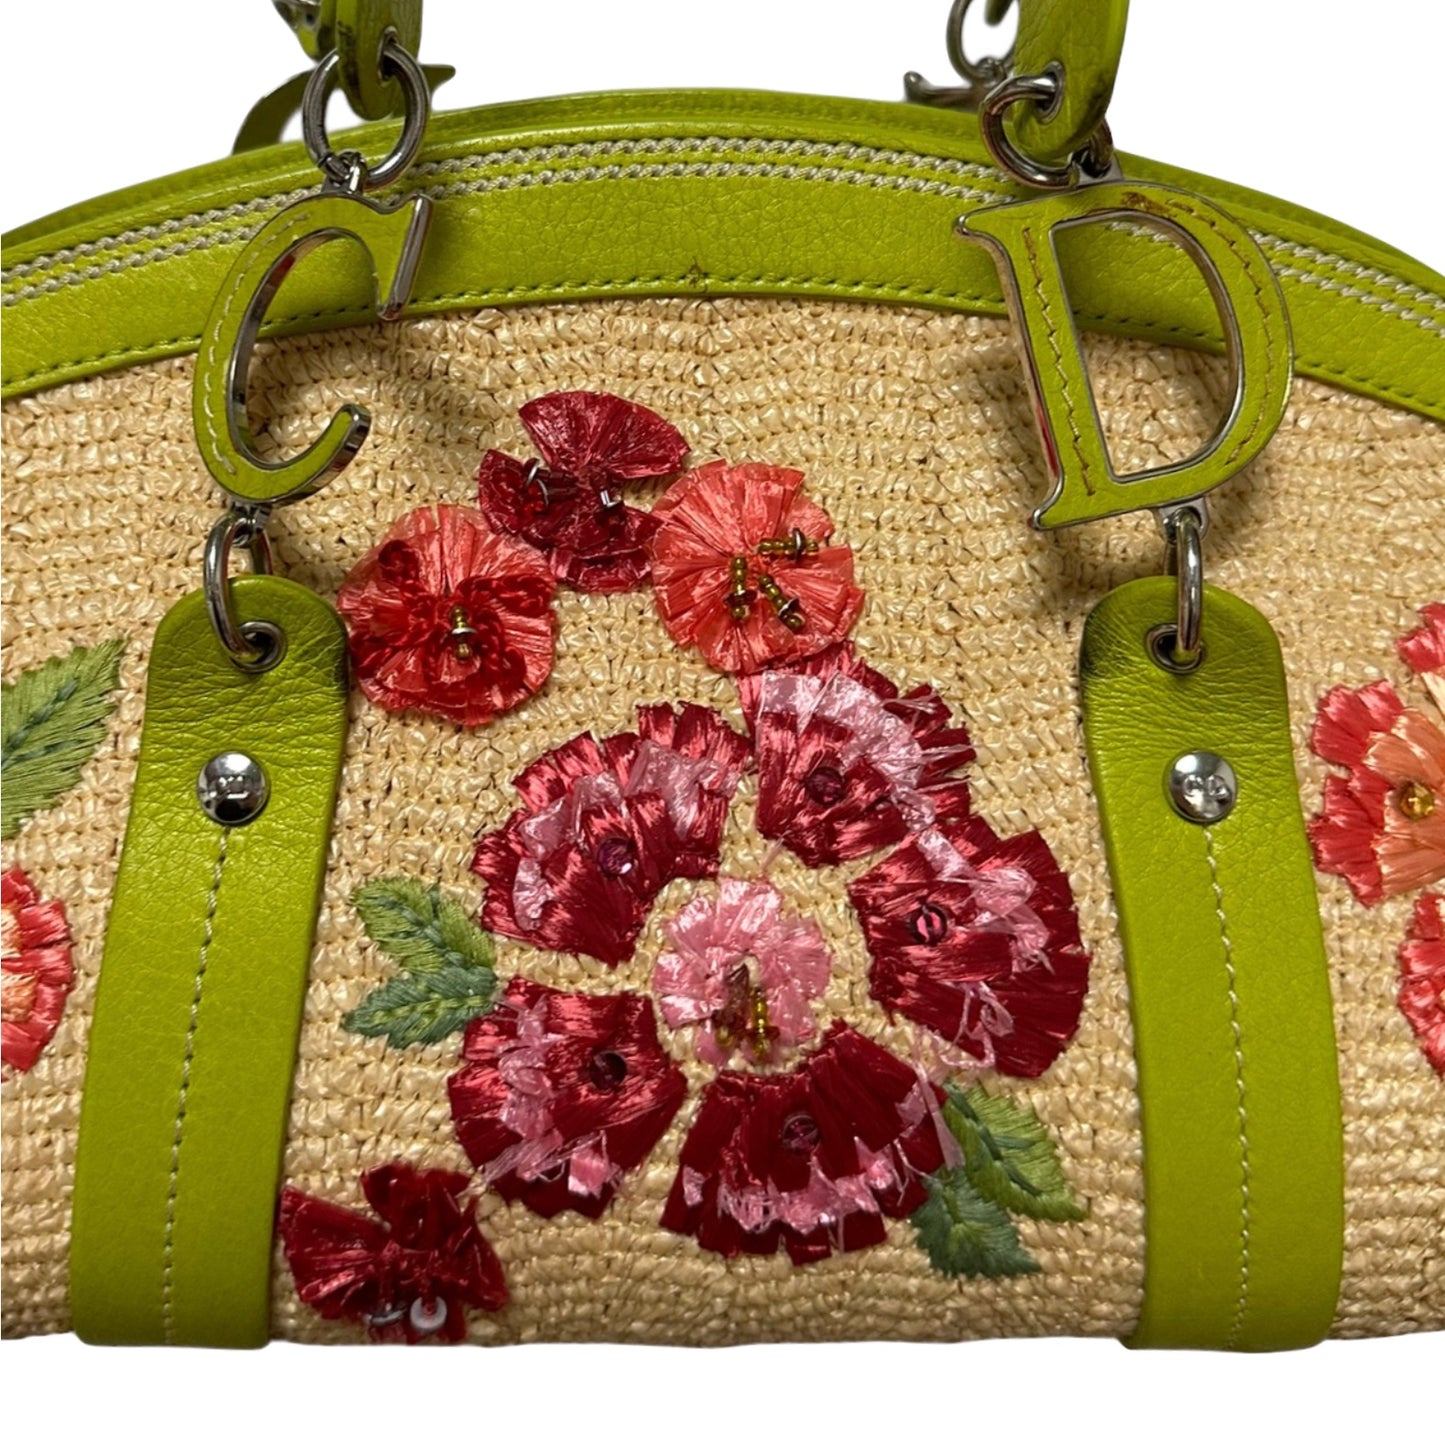 CHRISTIAN DIOR Spring Summer 2005 Floral Straw Raffia Leather Handbag